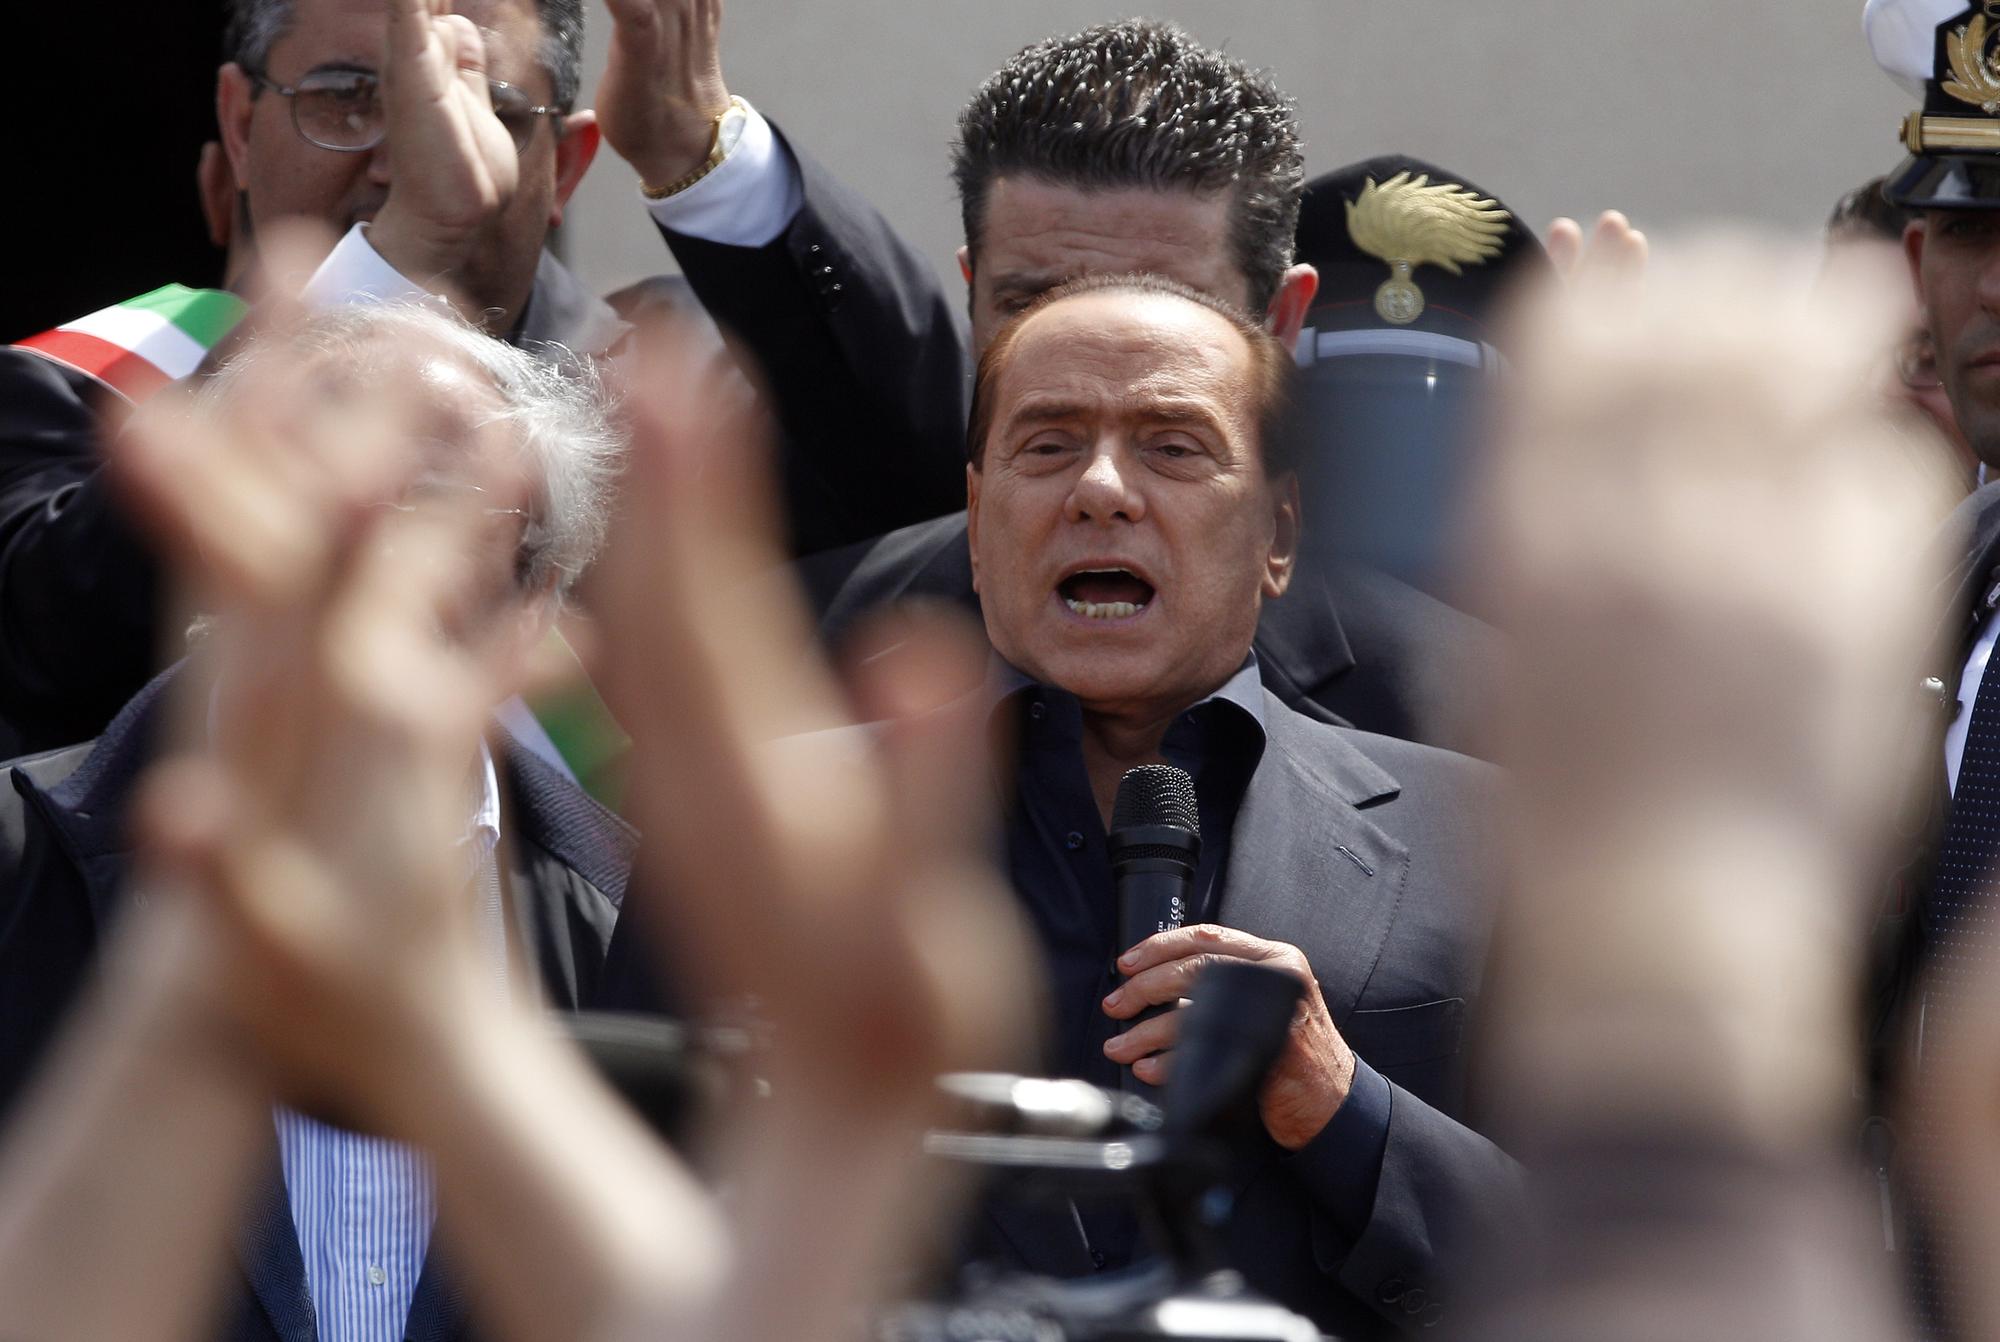 Les promesses de Silvio Berlusconi ont été applaudies. [REUTERS - Tony Gentile]